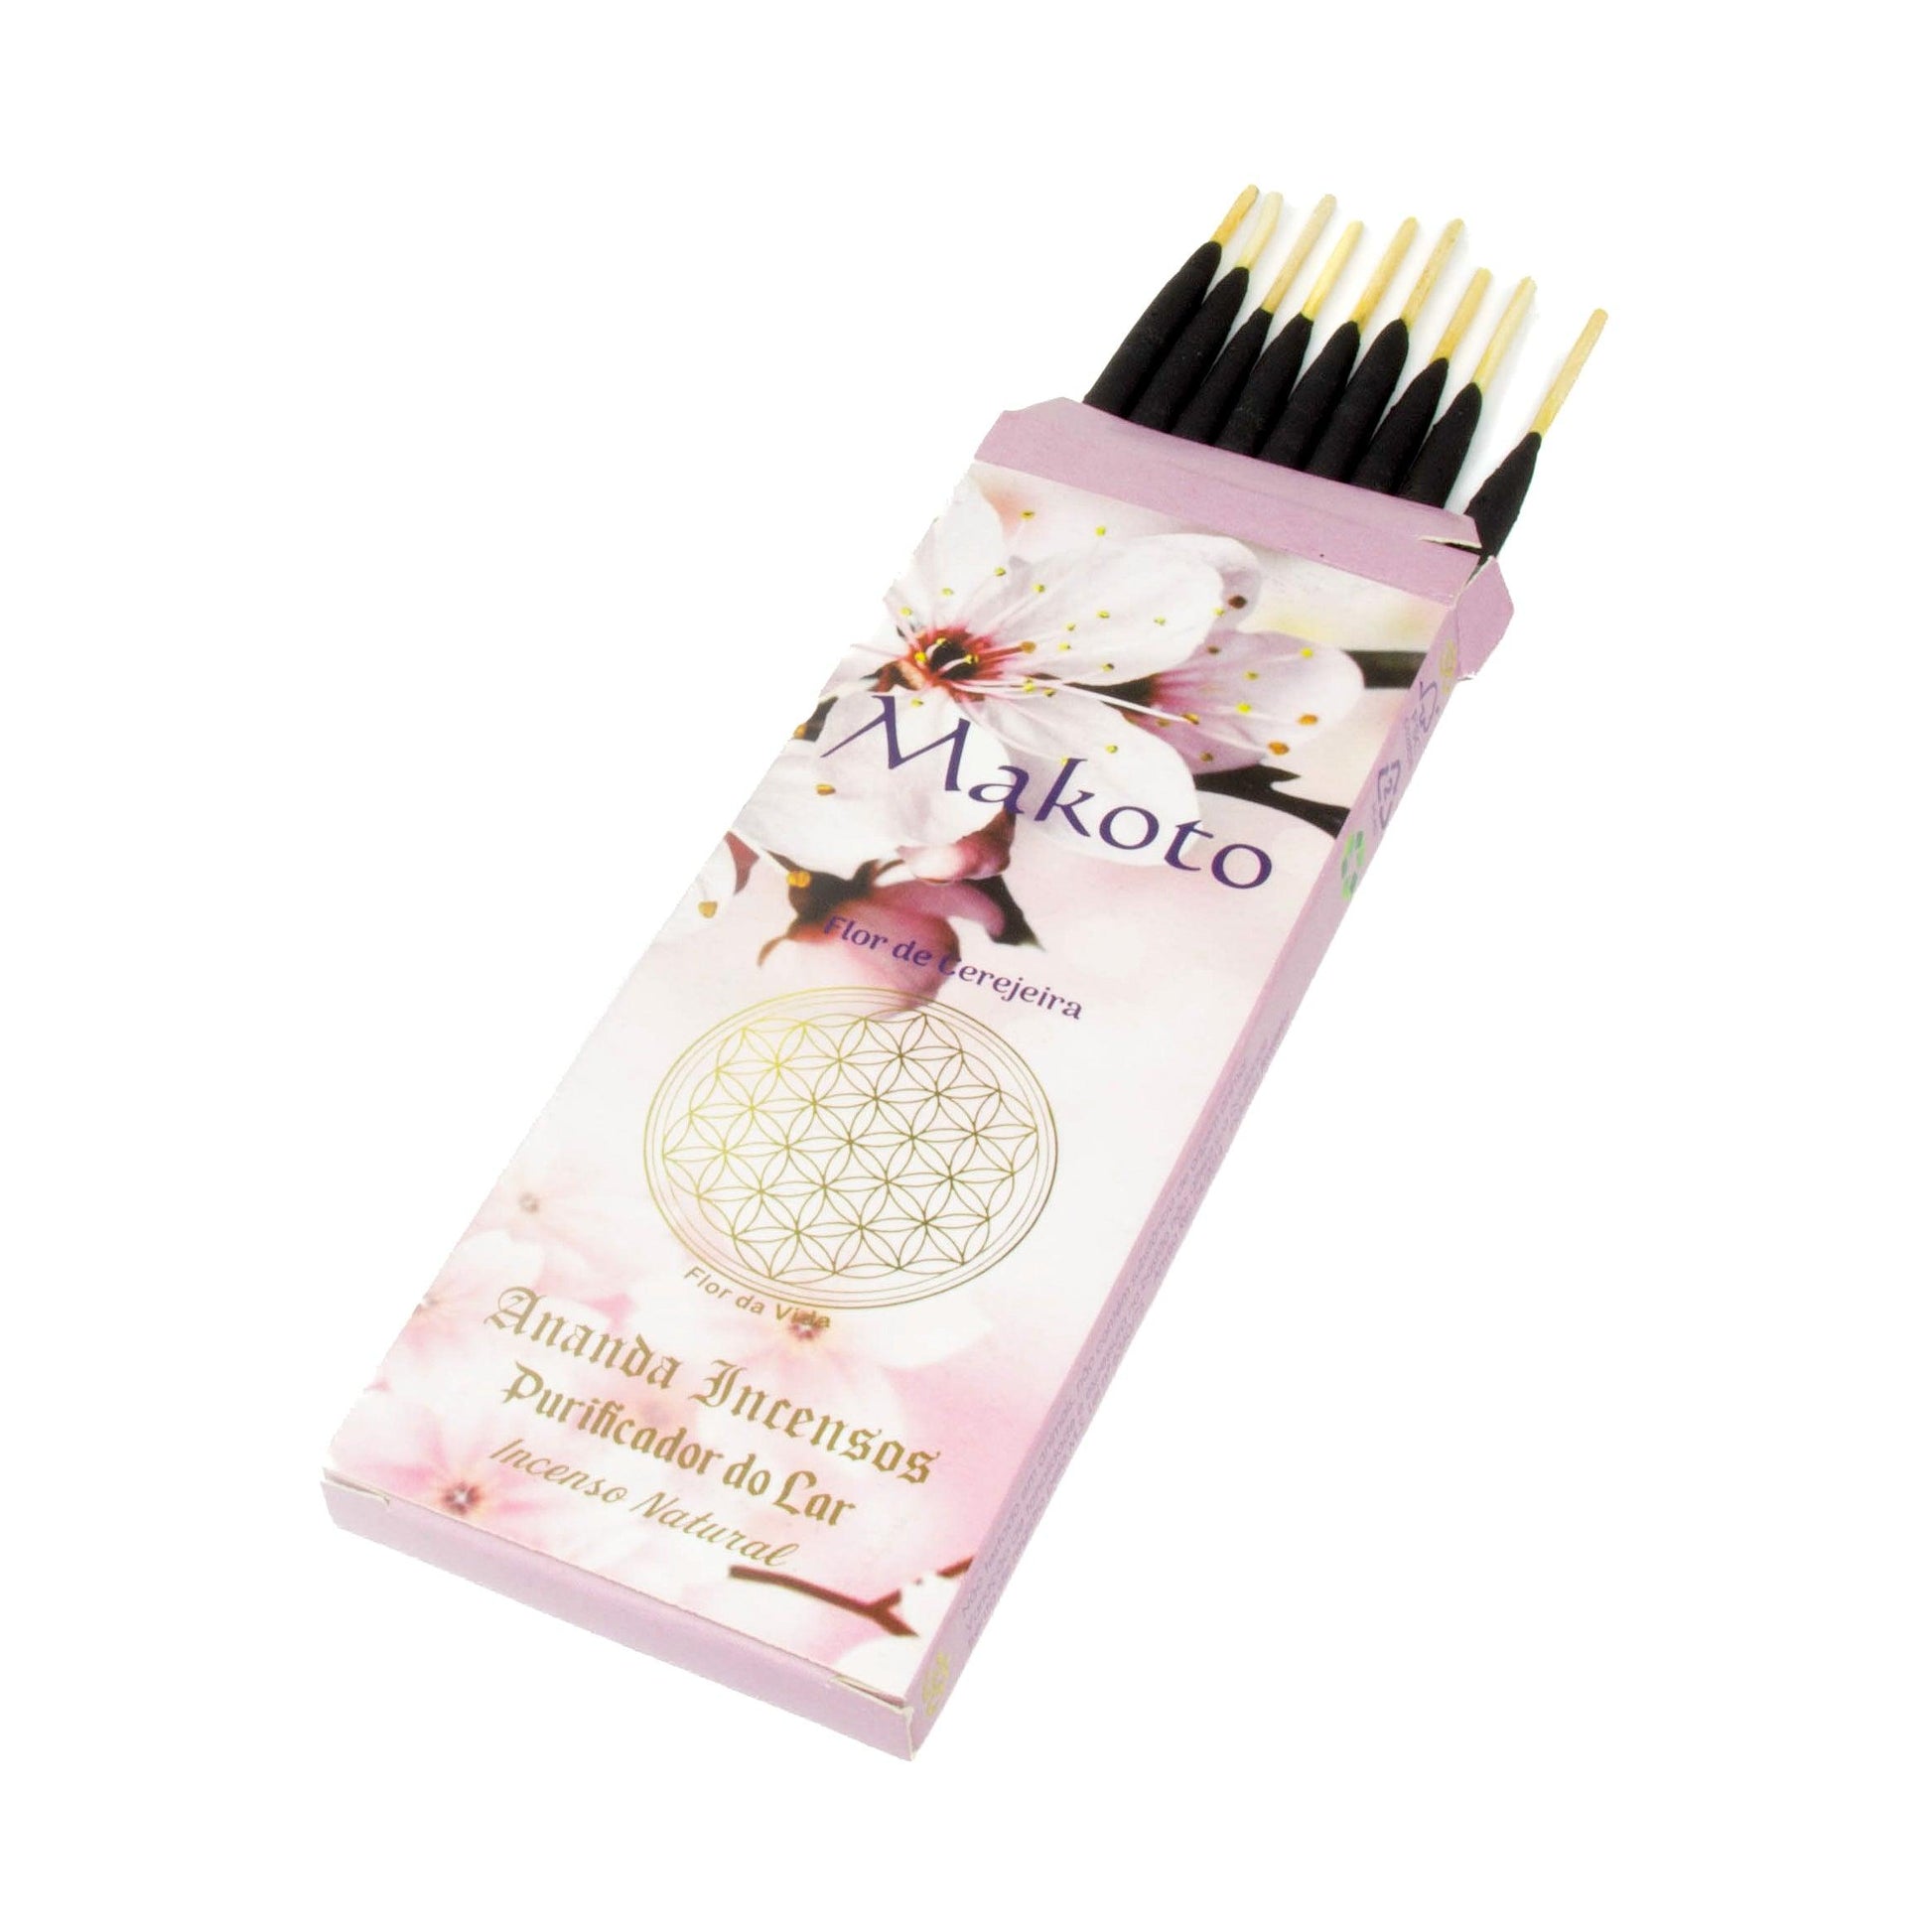 Incenso Makoto - Flor de Cerejeira - Tudo para aromaterapia, óleos